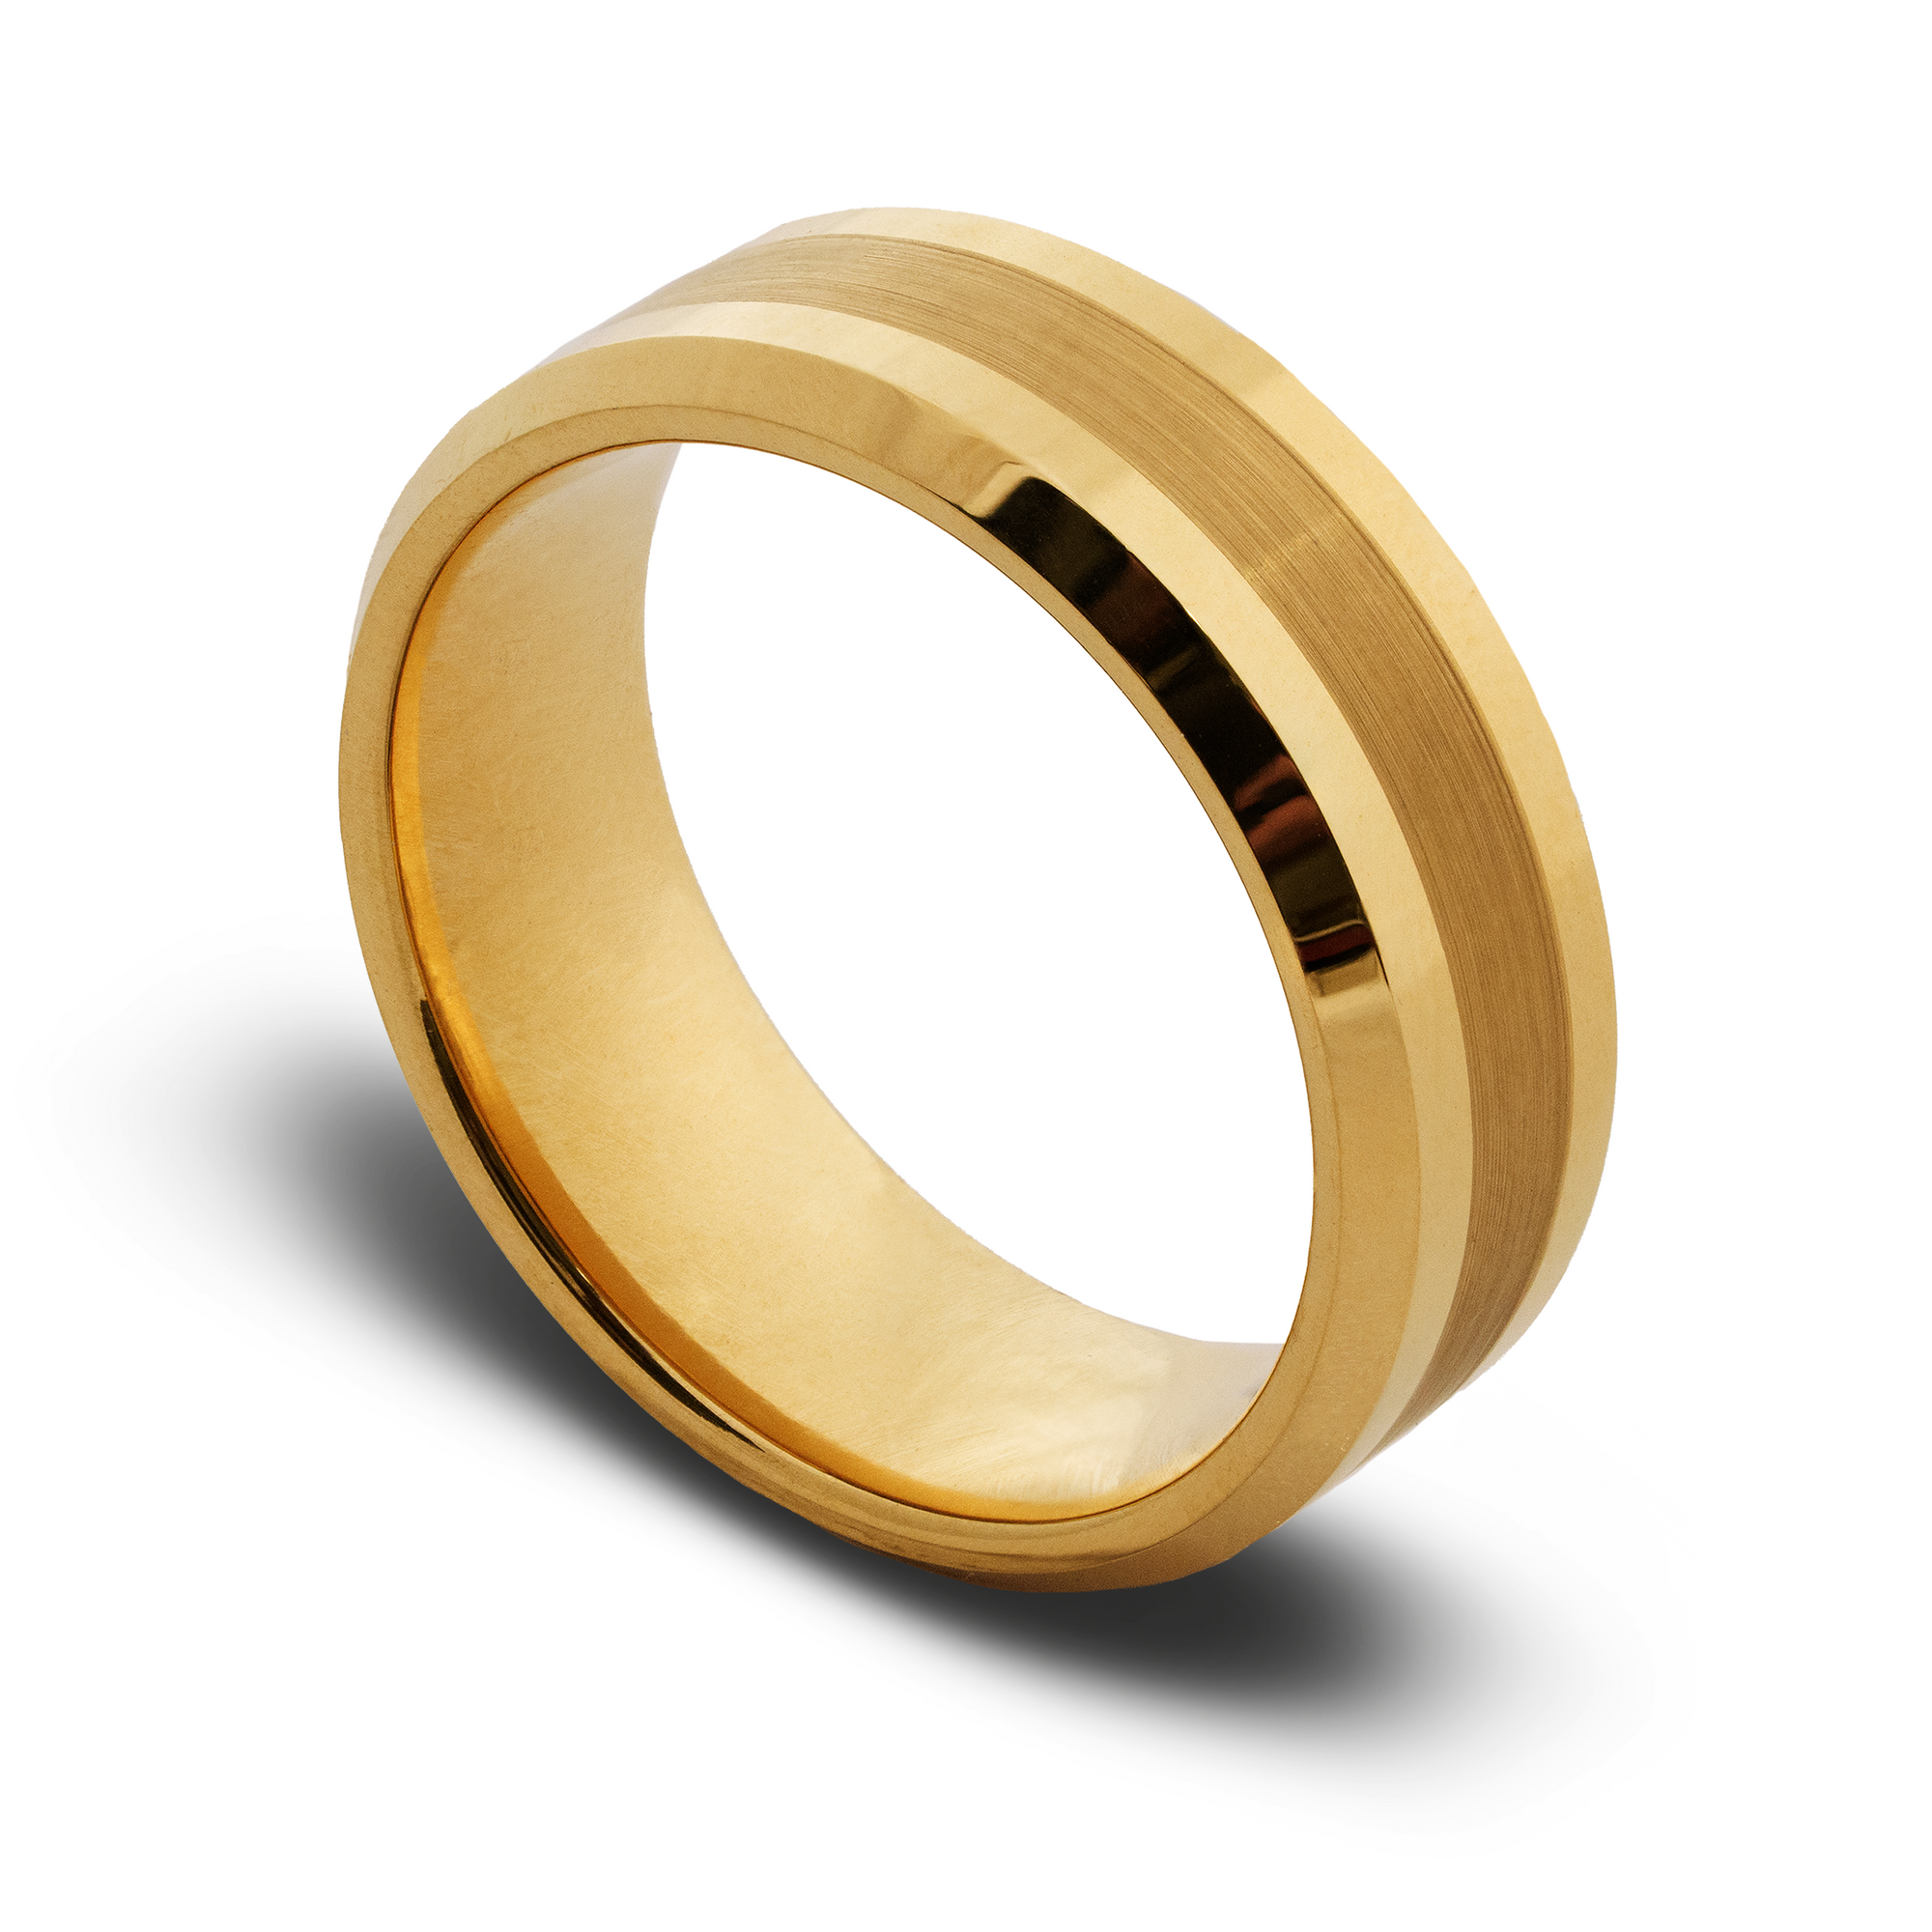 The "Gentleman" Ring